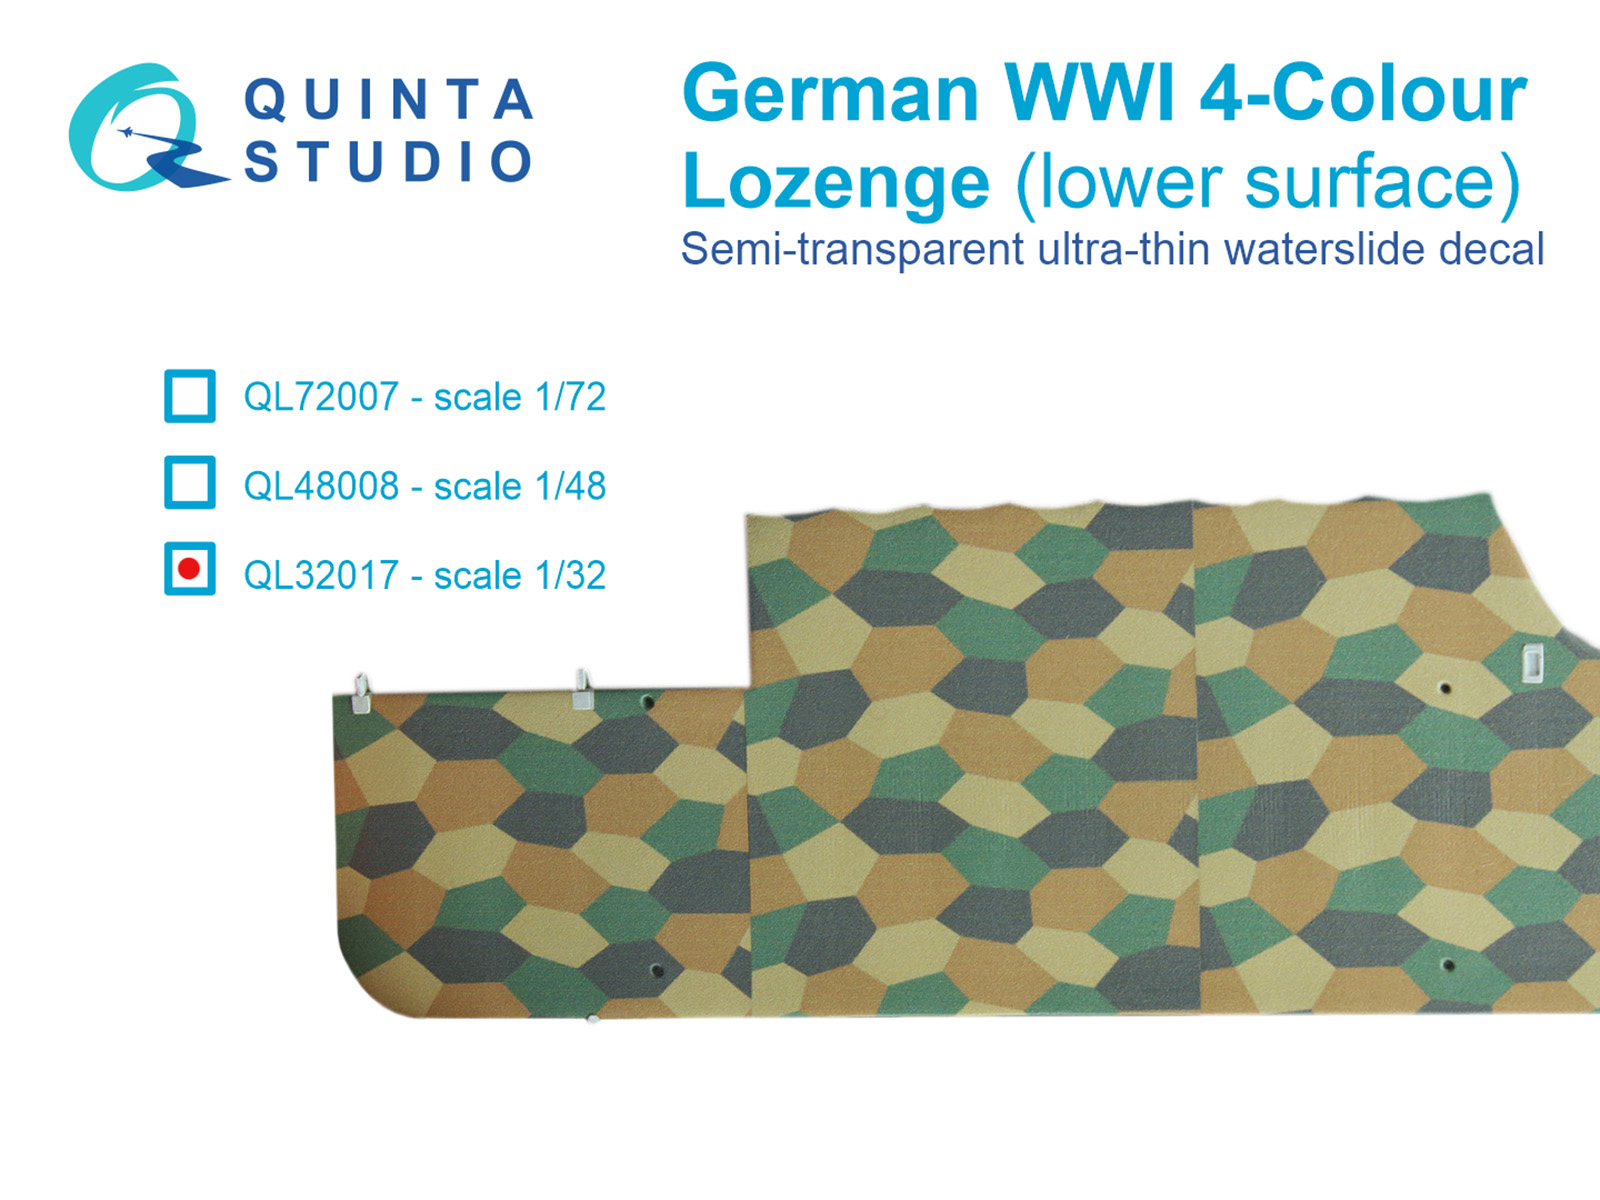 German WWI 4-Colour Lozenge (lower surface)